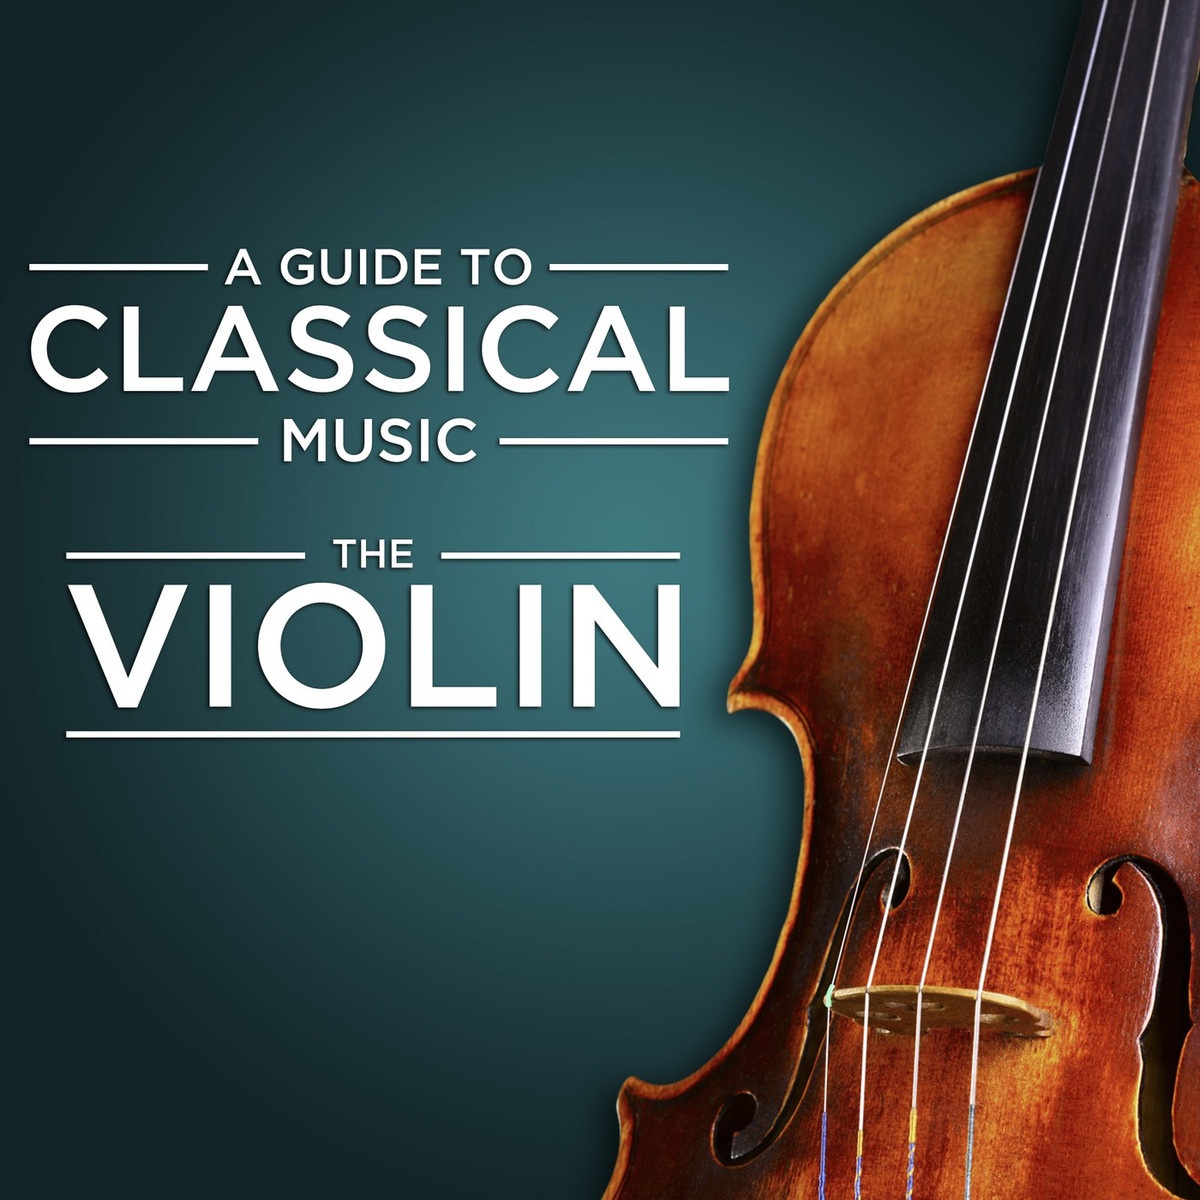 Sonata in A Major for Violin and Piano, M. 8: II. Allegro - Quasi lento - Tempo primo